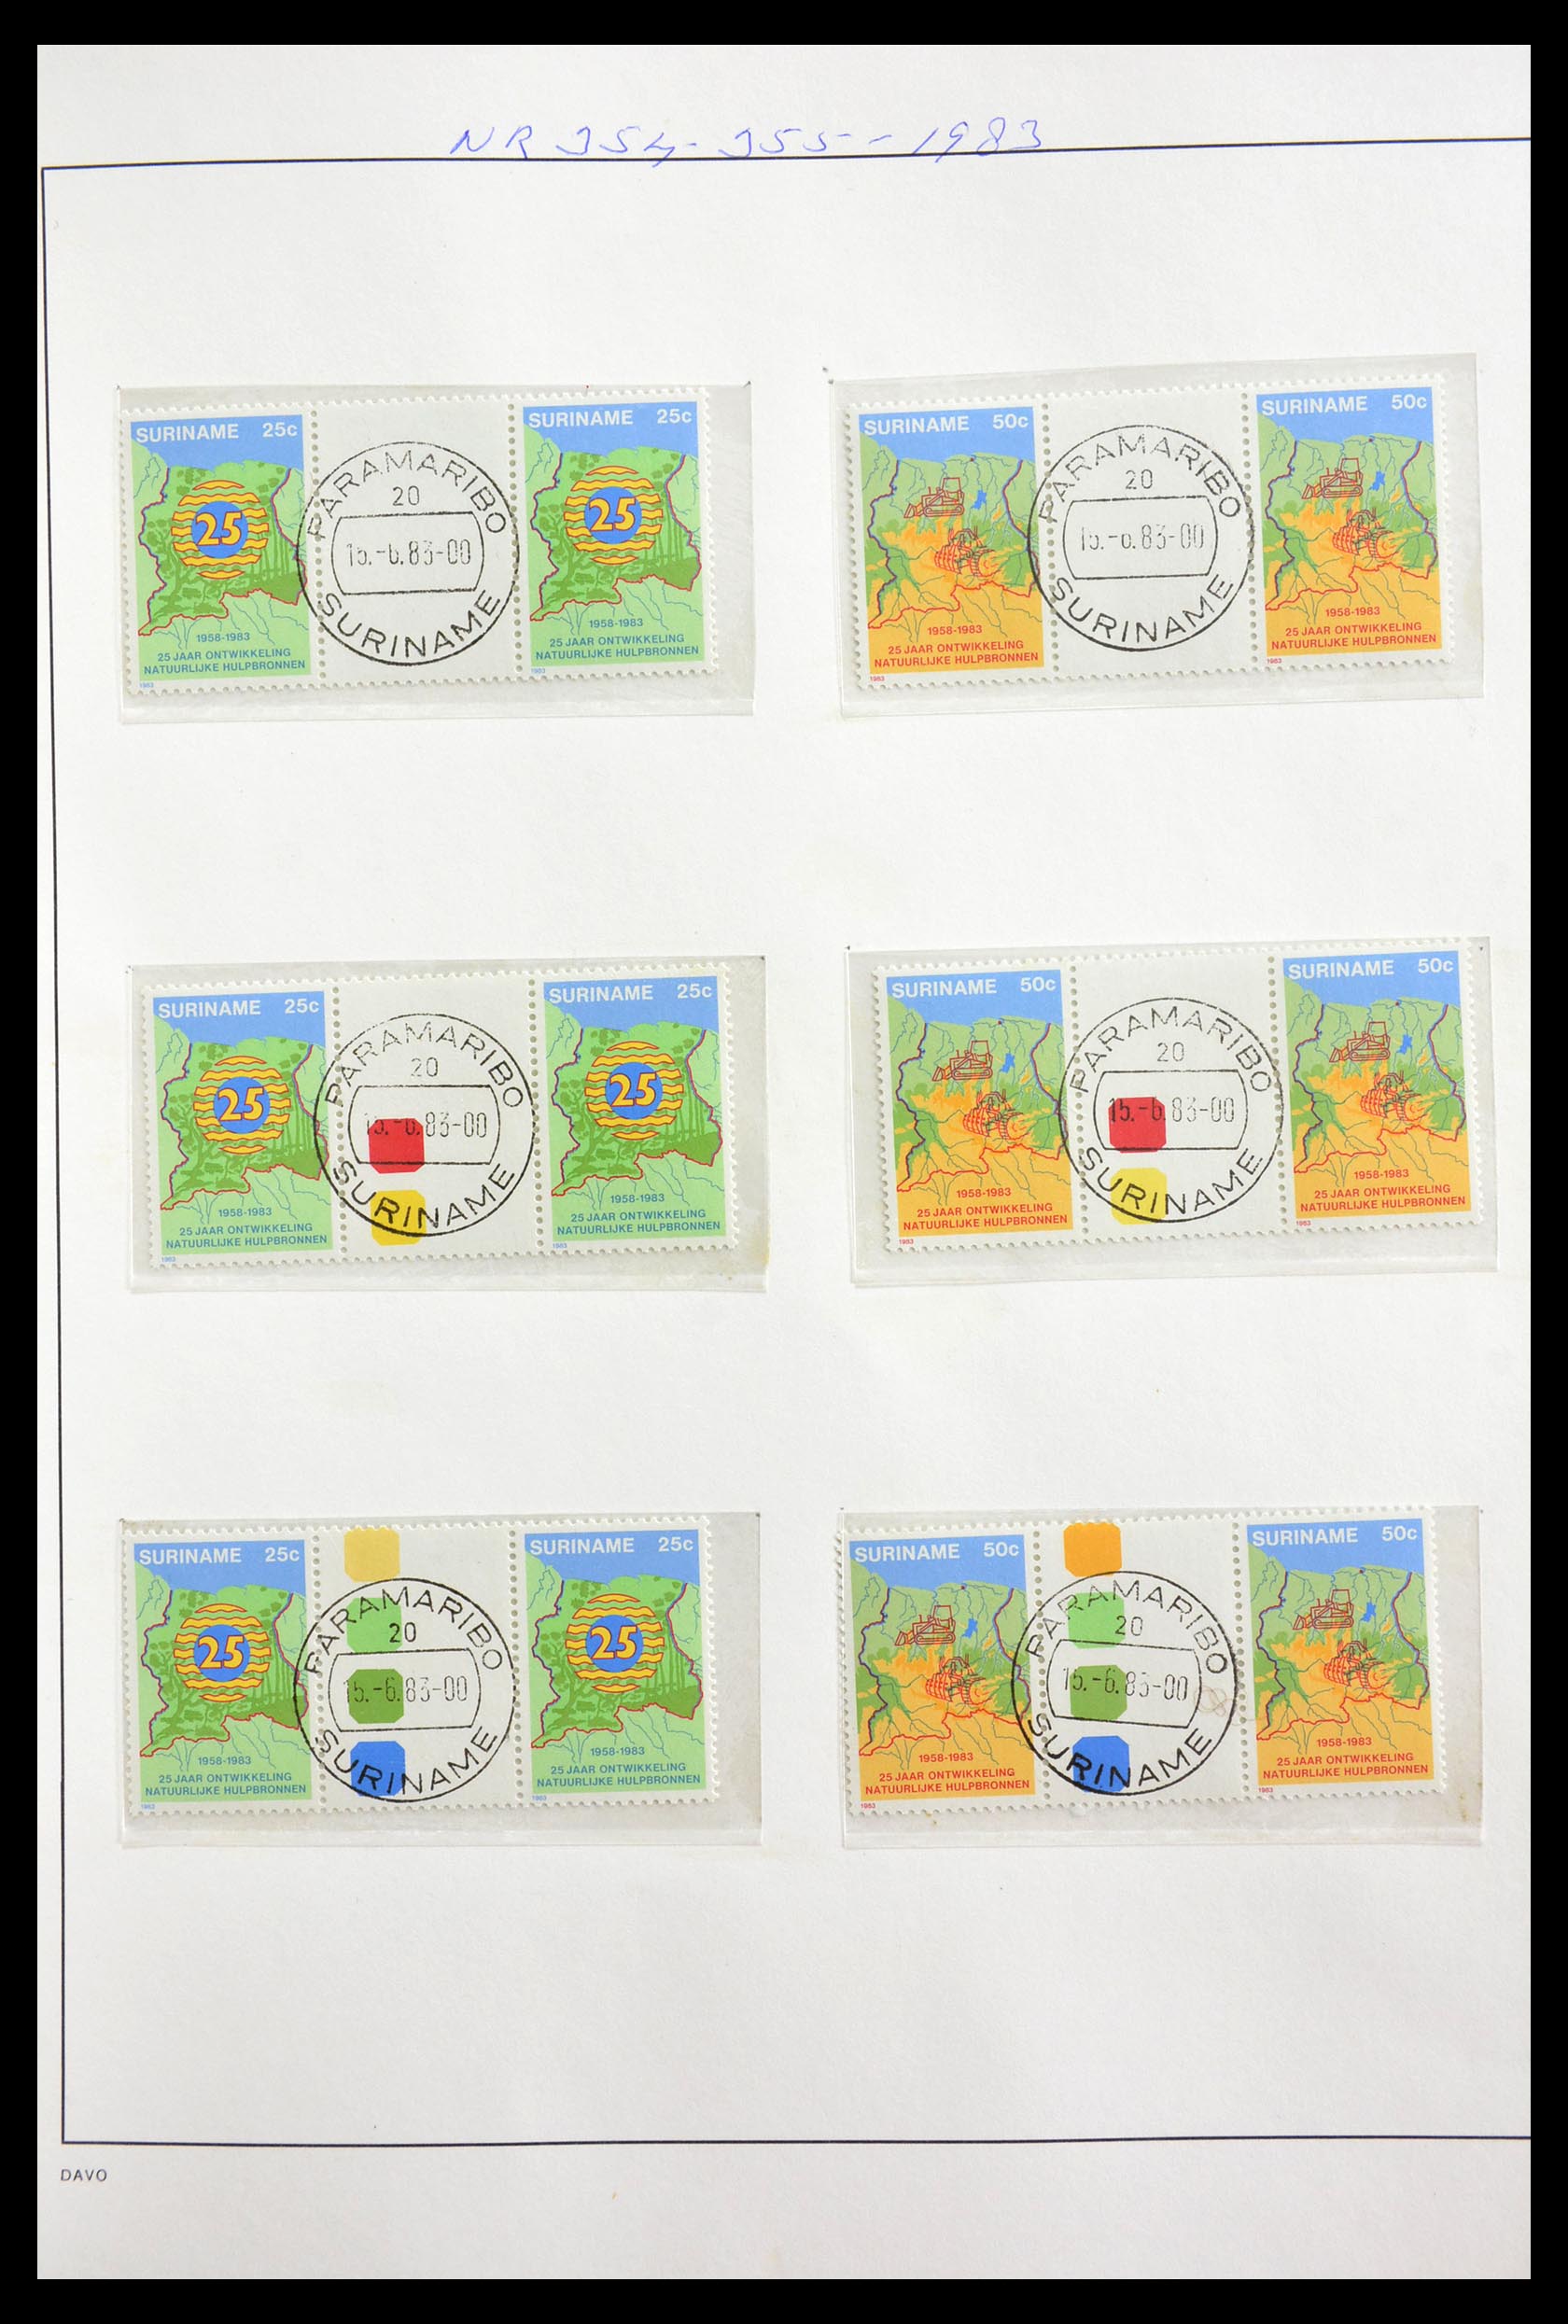 29154 016 - 29154 Surinam gutterpairs 1977-2003.